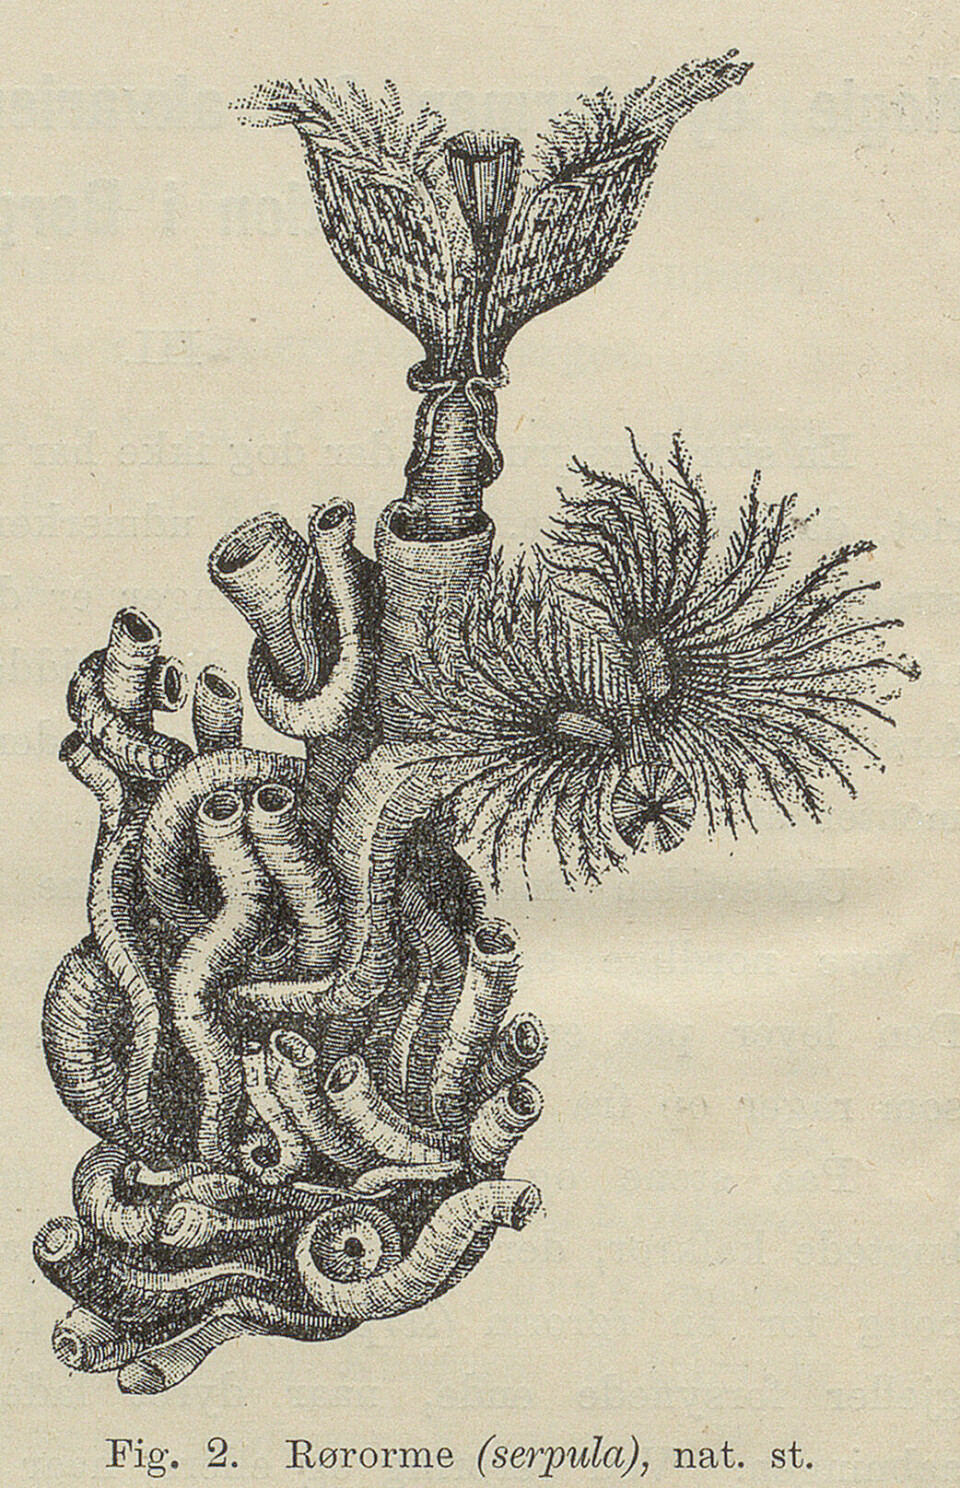 Tegning av en levende rørorm. Naturen nr. 1, 1893. Manuskript- og librarsamlingen, UBB.